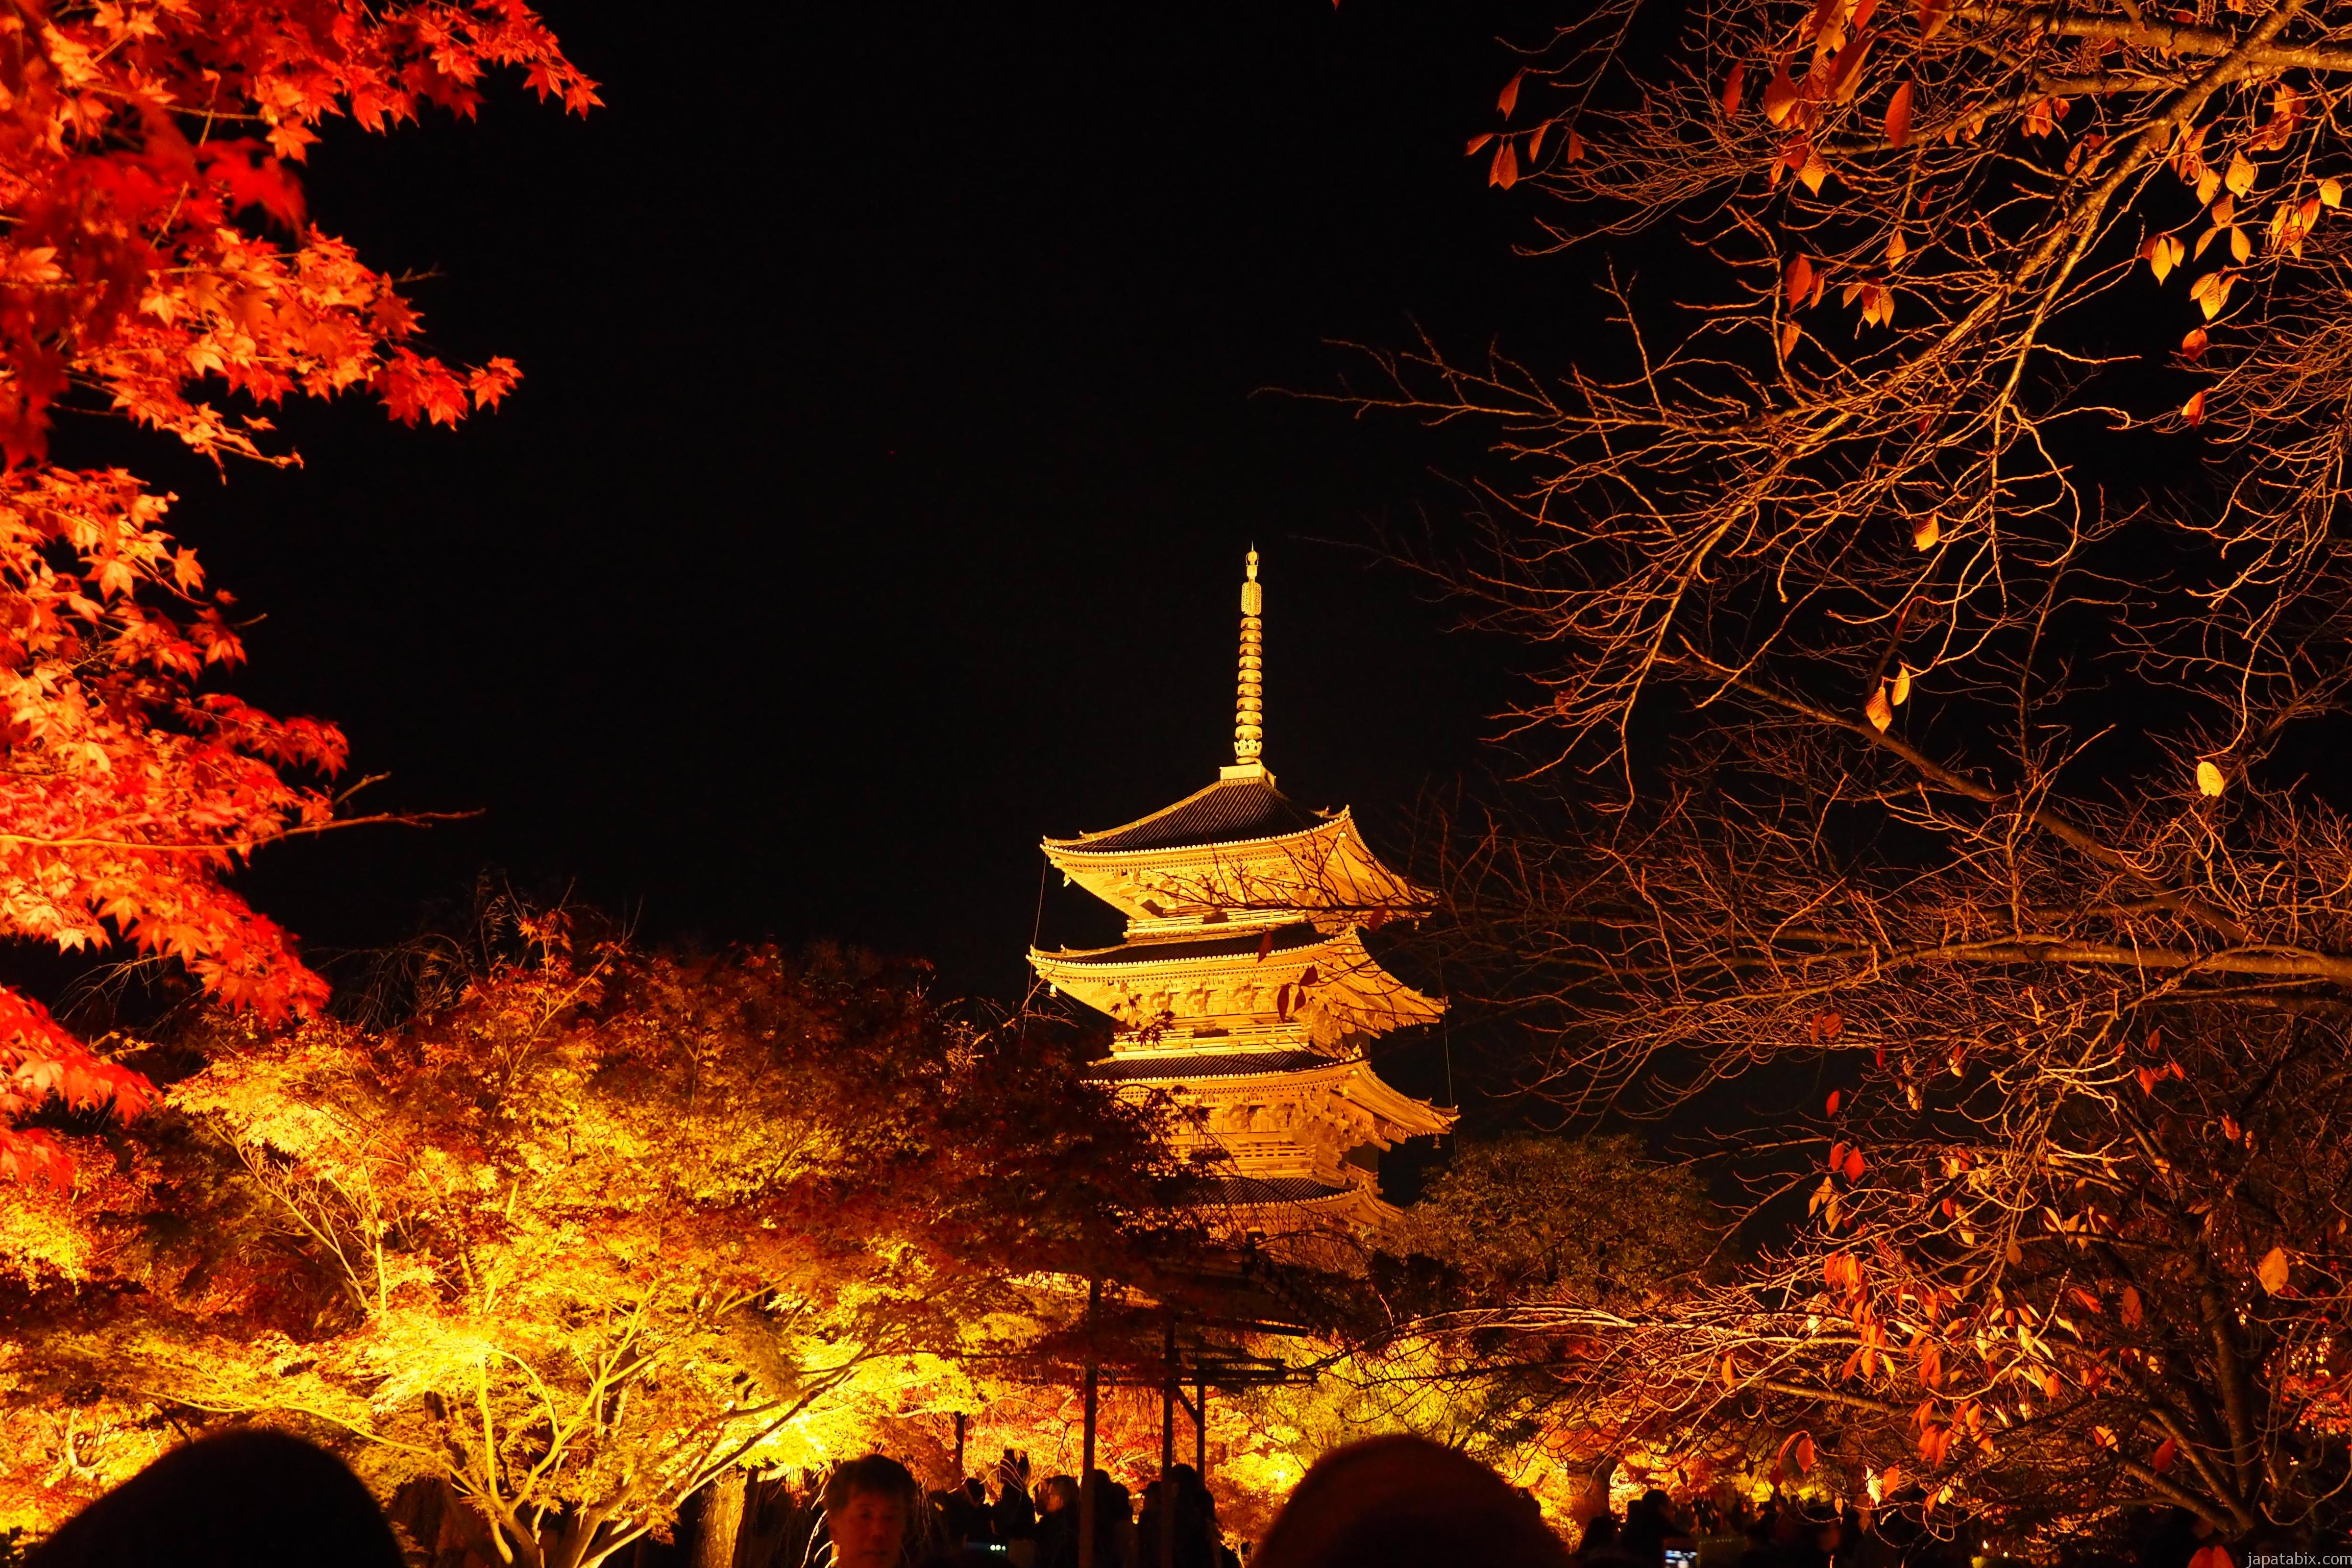 京都 東寺の紅葉21年版 見どころは五重塔のライトアップ 混雑情報やアクセス方法を徹底解説